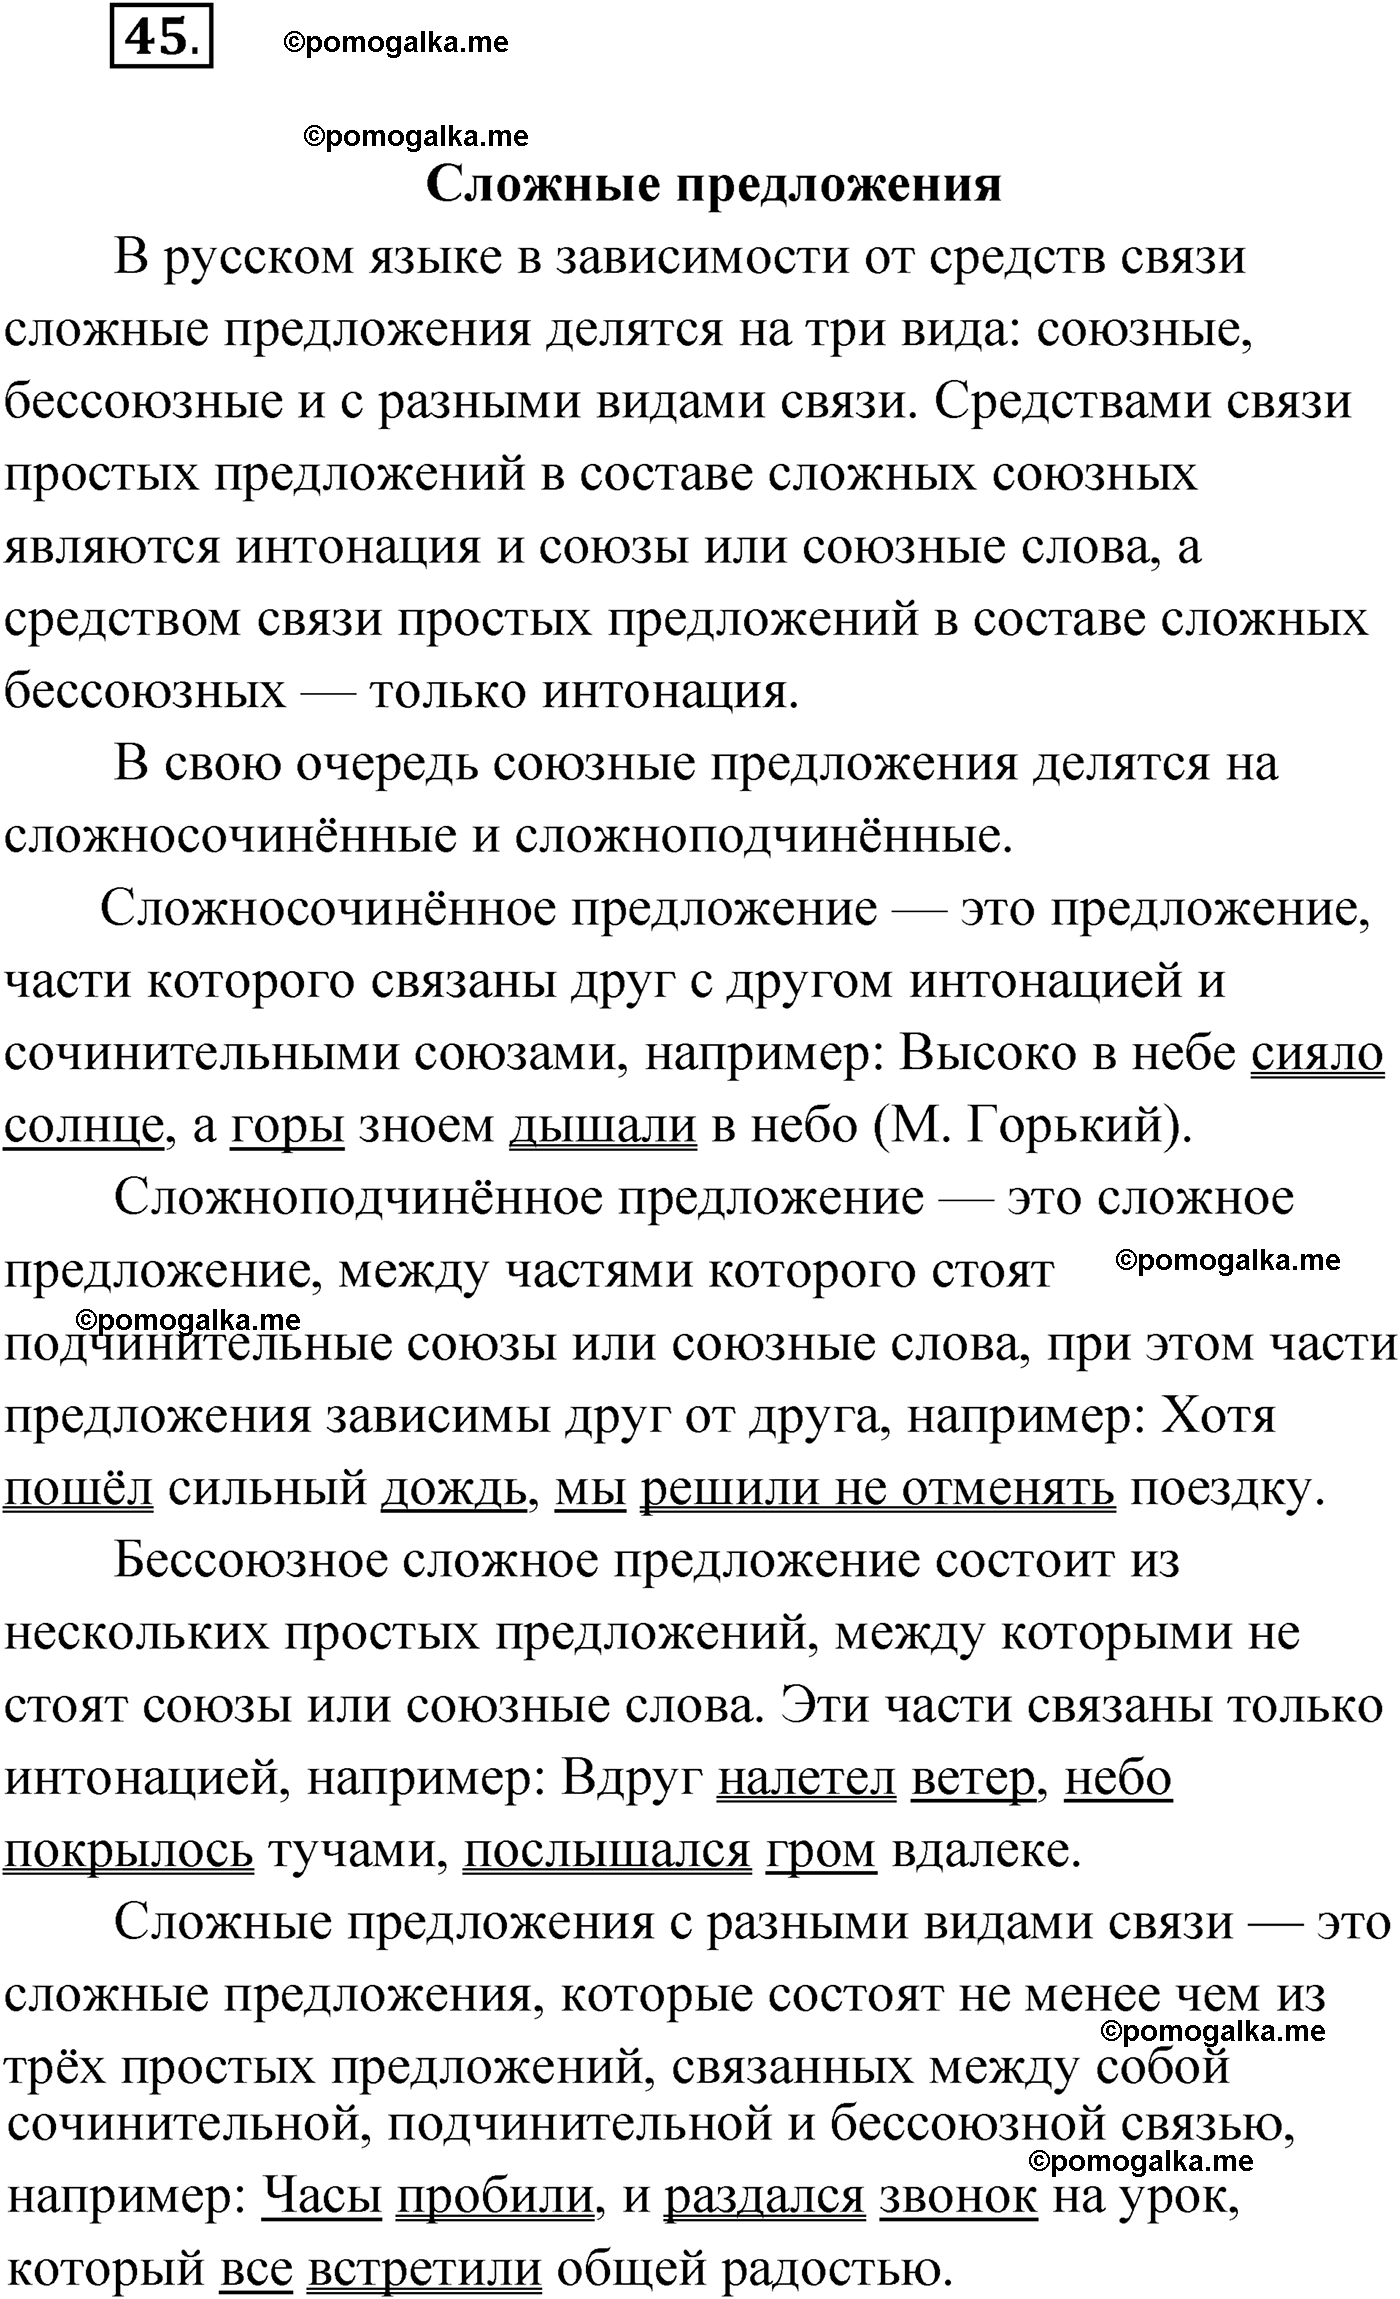 упражнение №45 русский язык 9 класс Мурина 2019 год